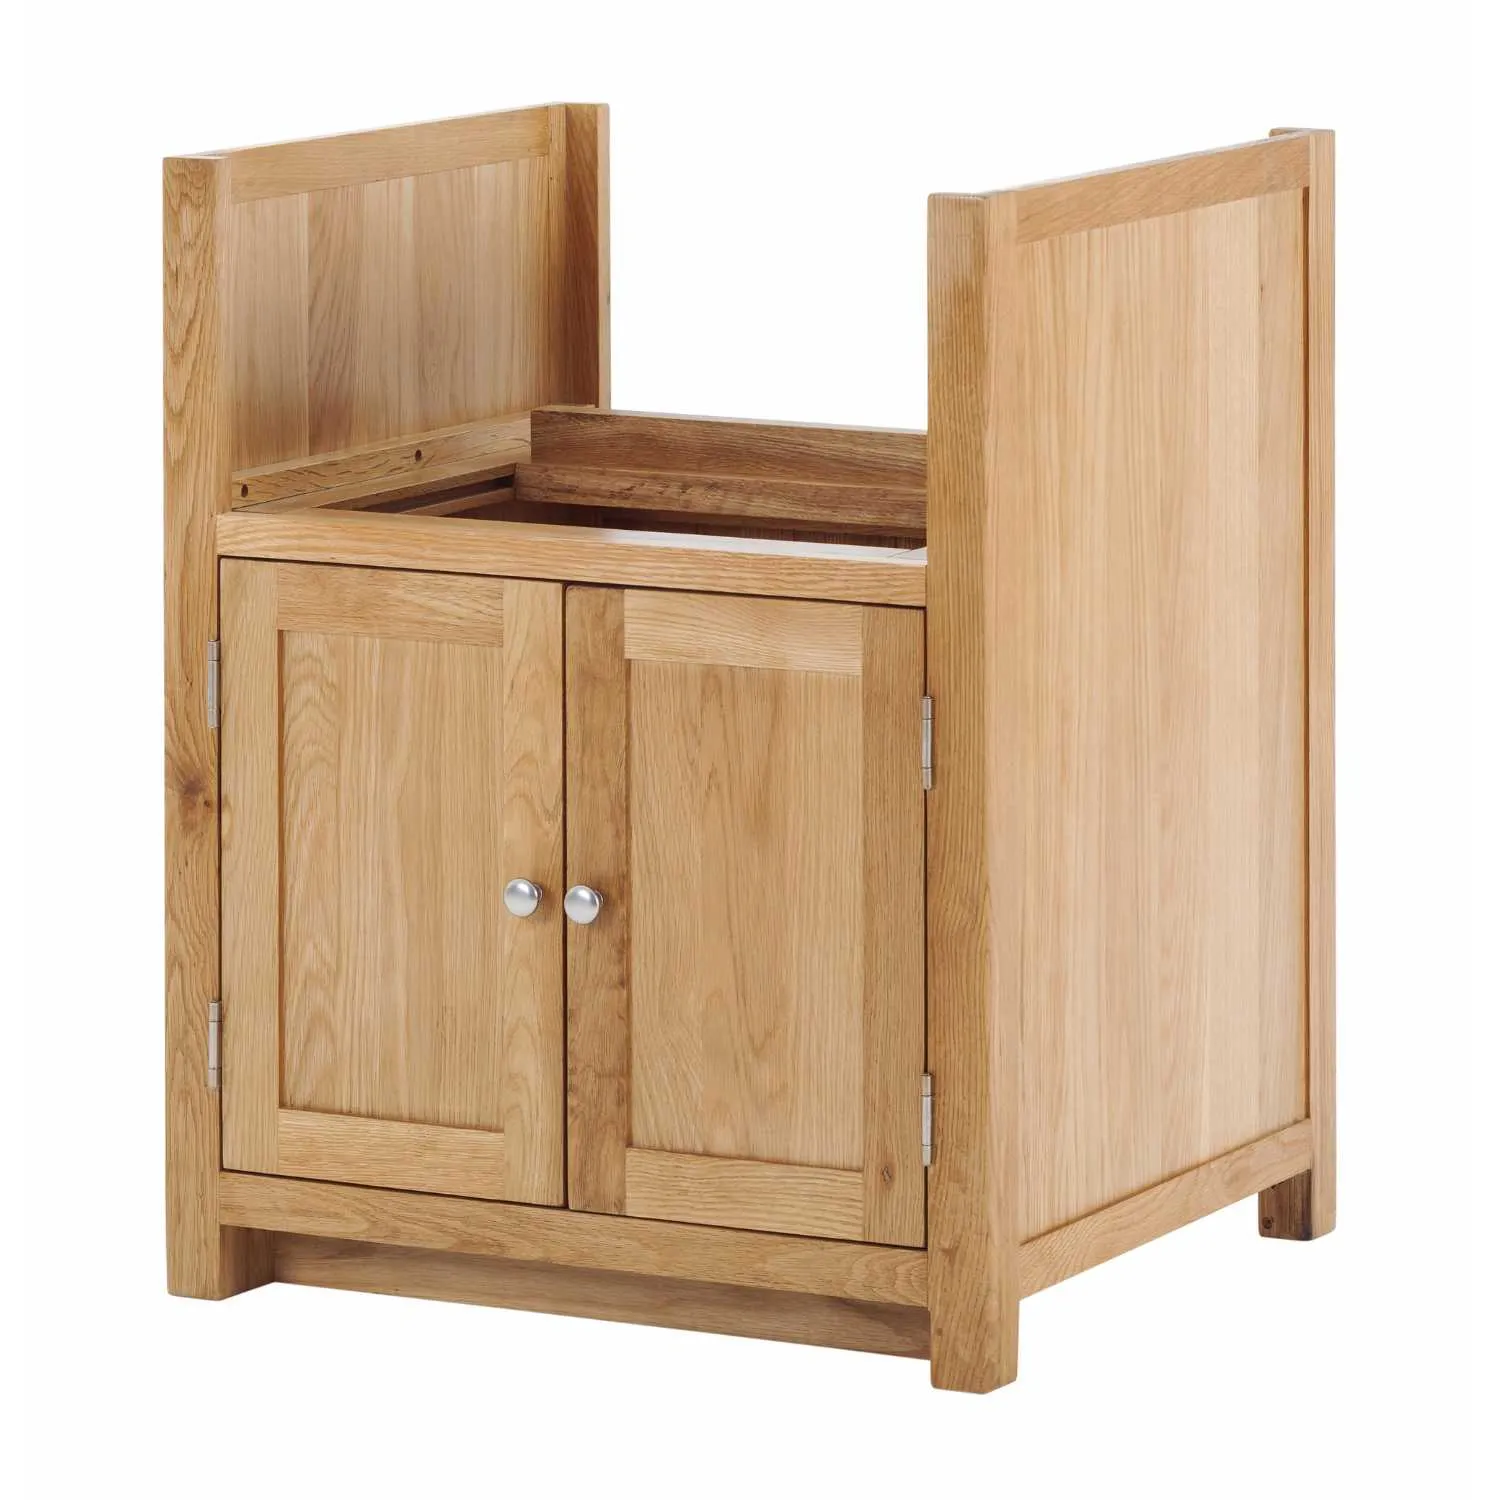 Handmade Oak Kitchens Sink Adjustable Cabinet